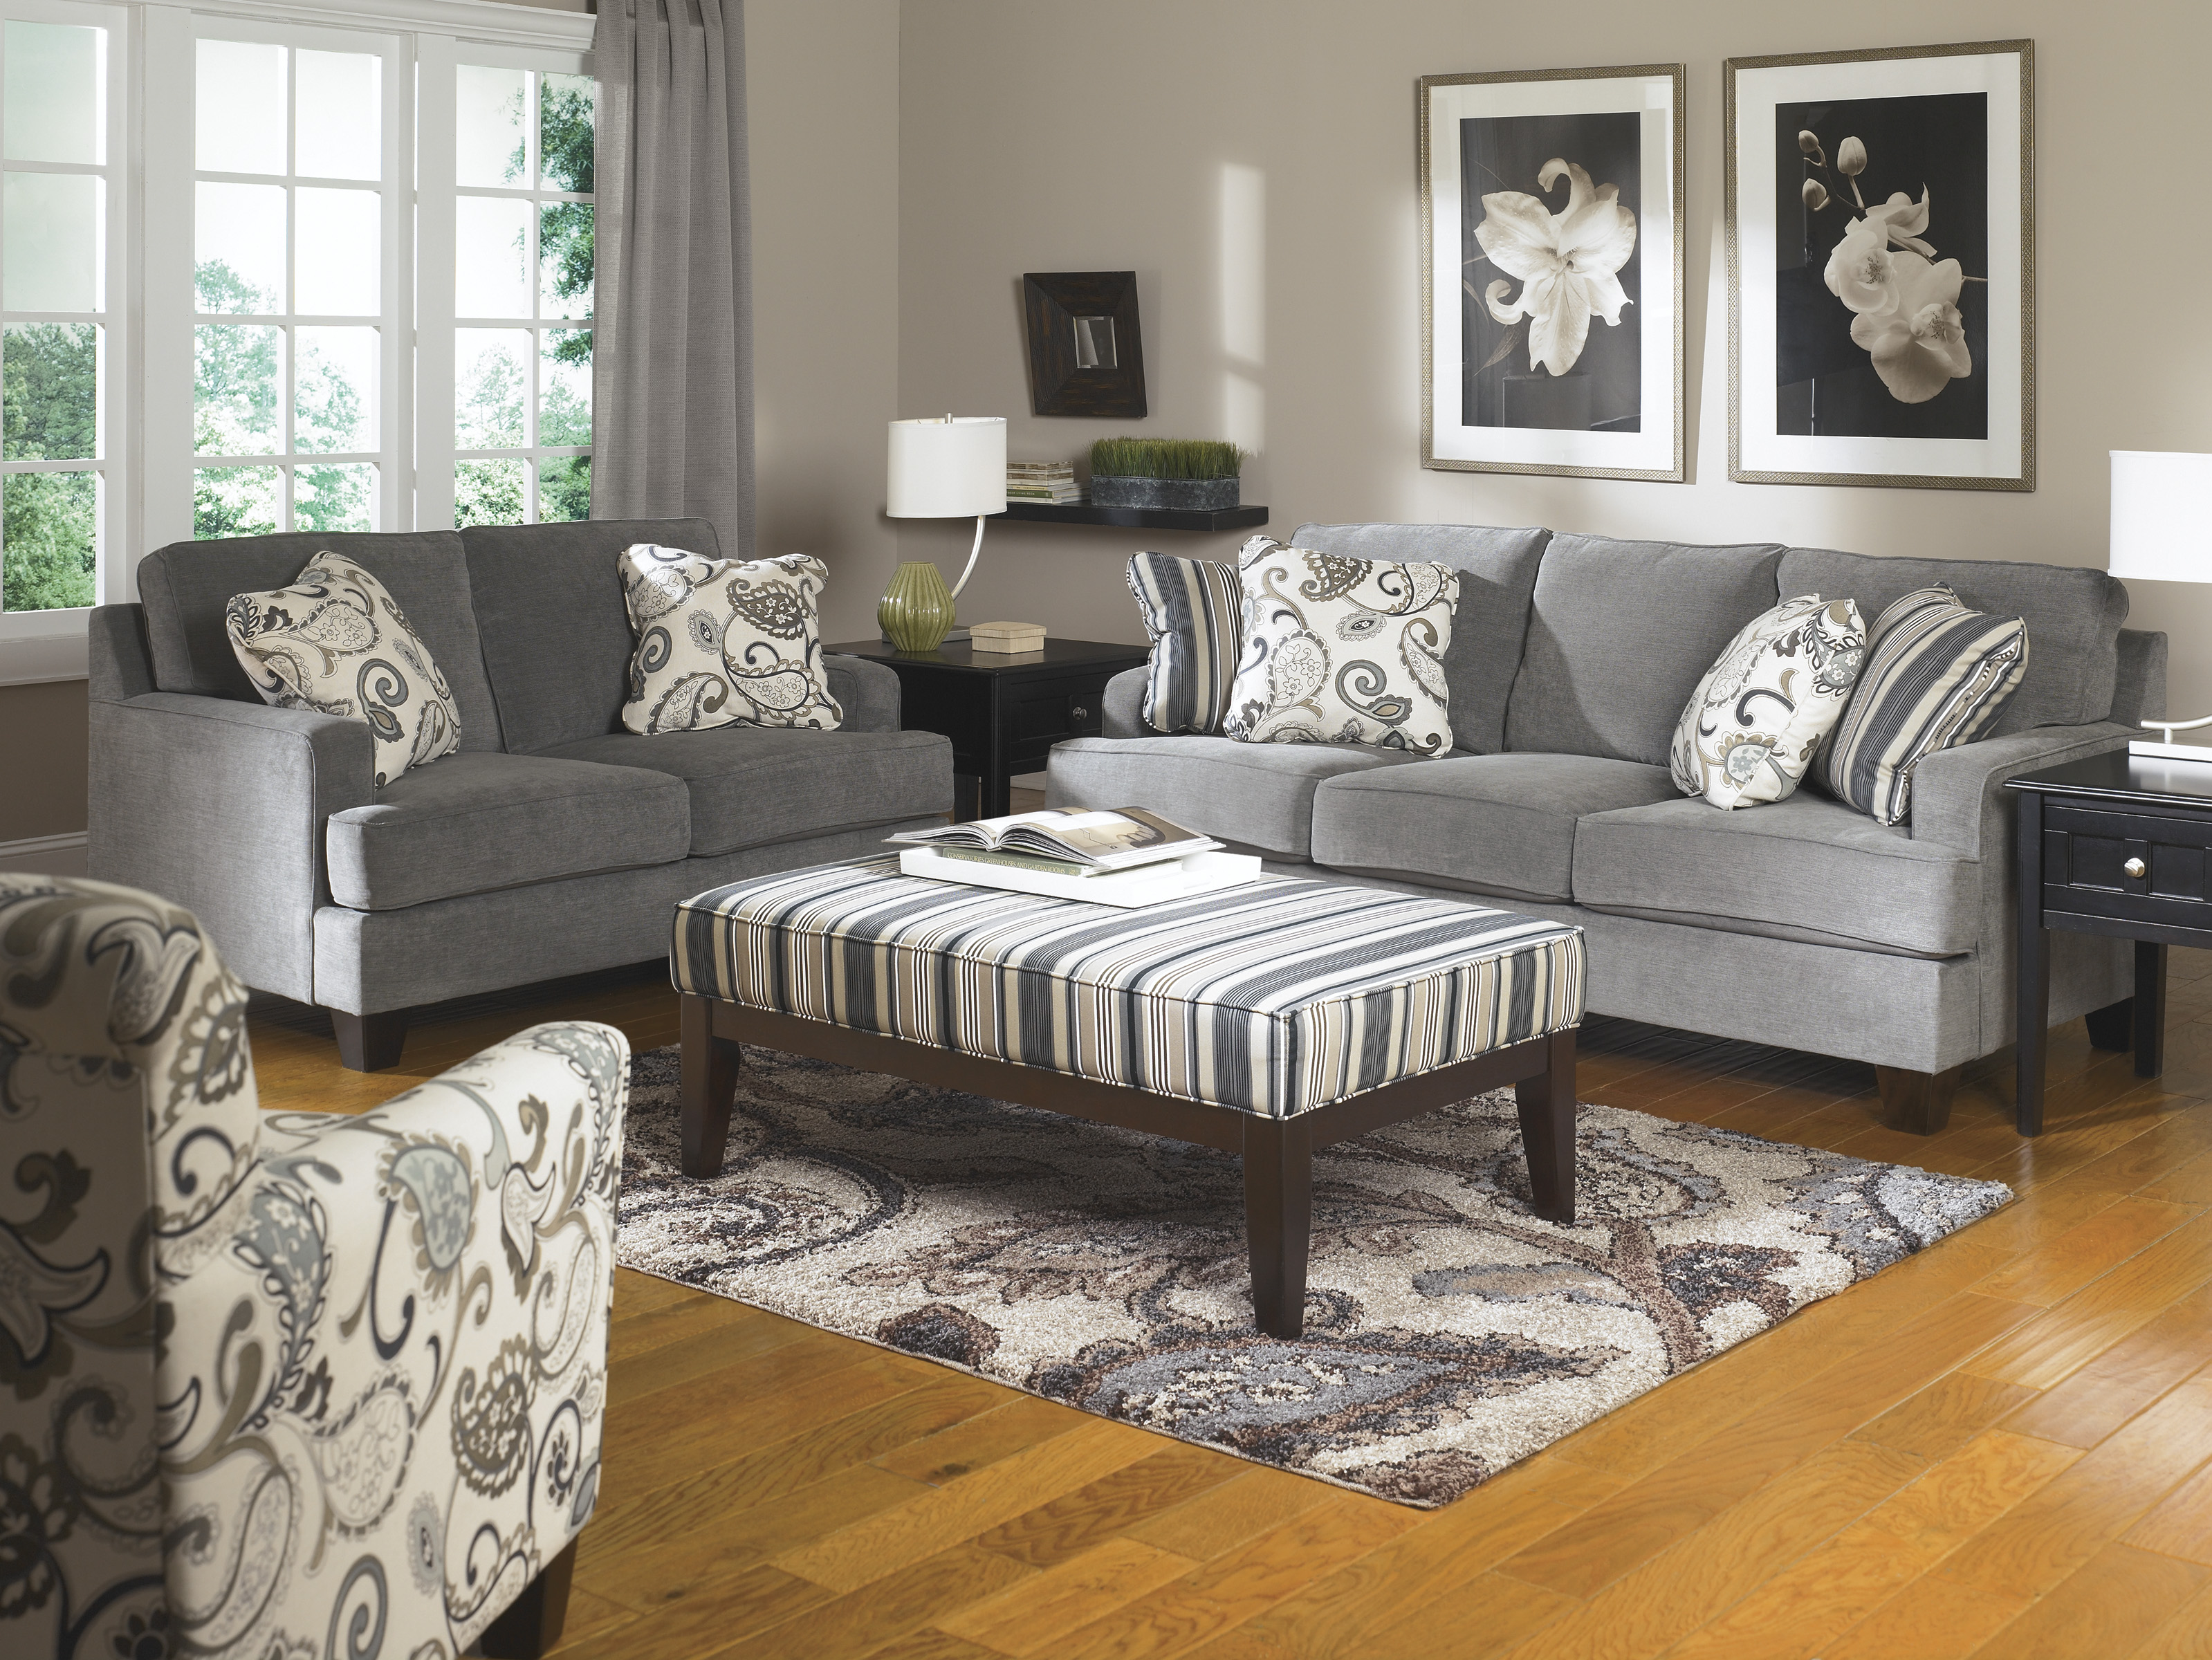 living room furniture sets for rent